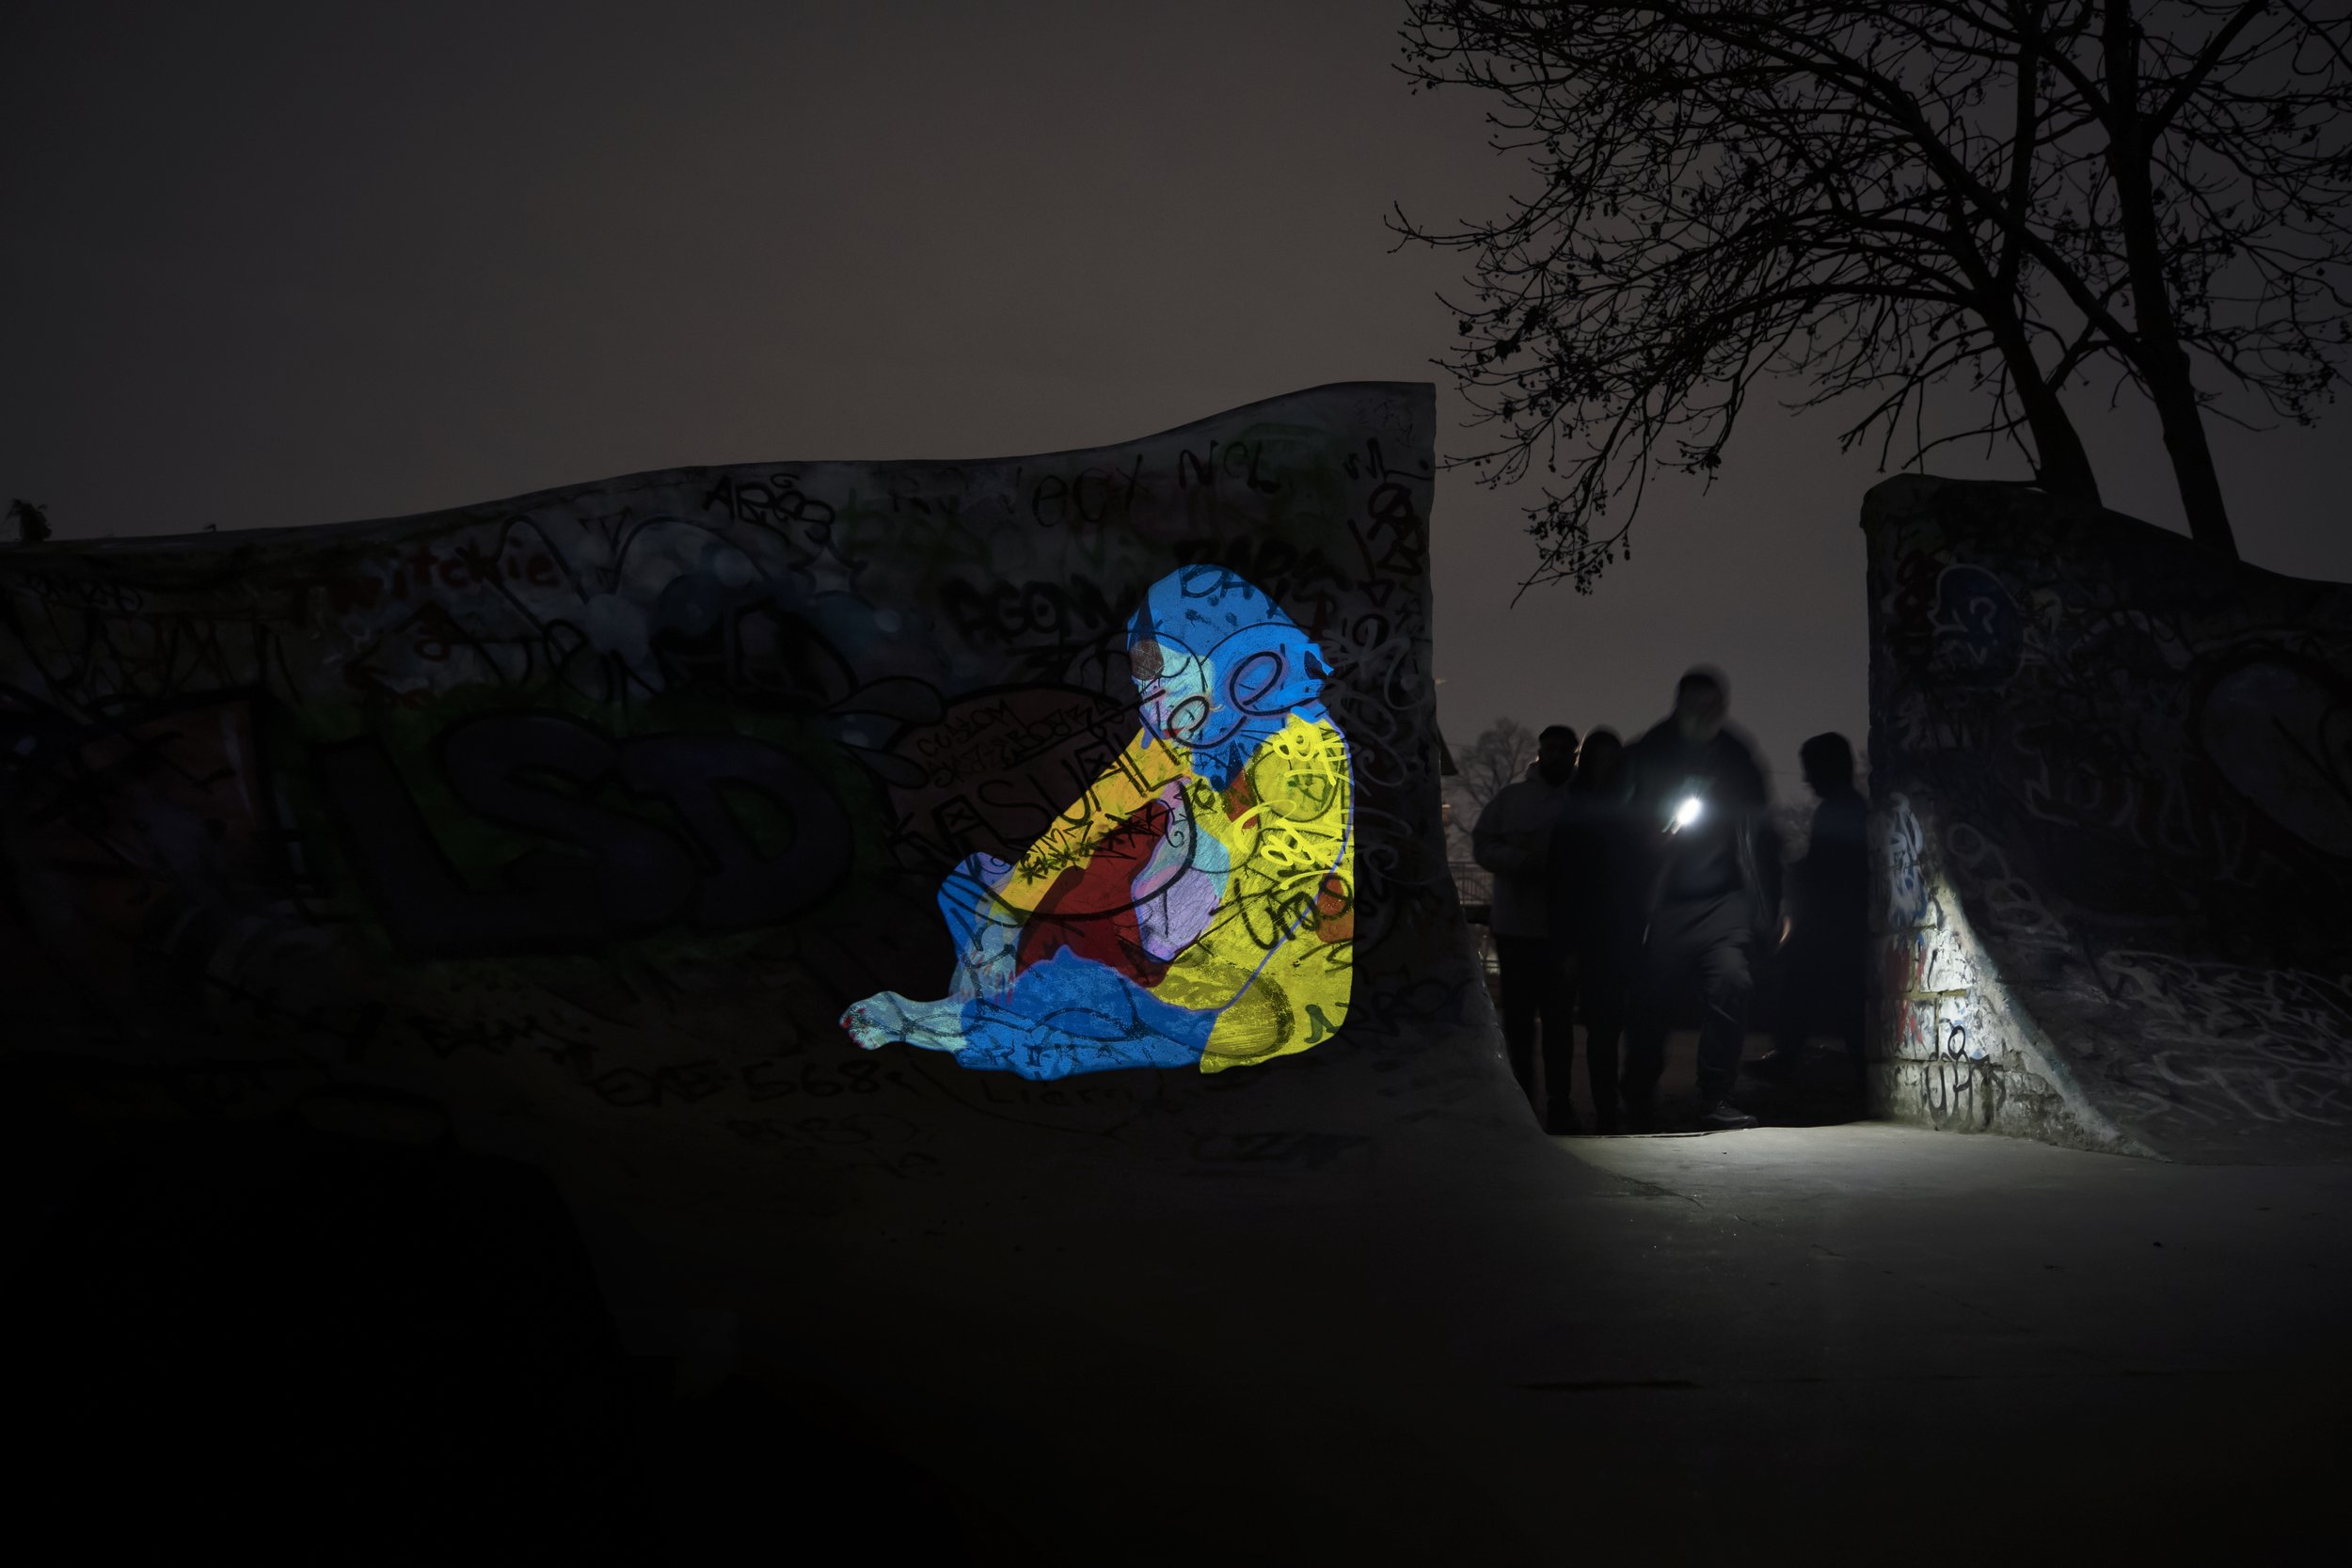 ハンナ・ベニハウドによる夜道の安全性について啓蒙するアート作品